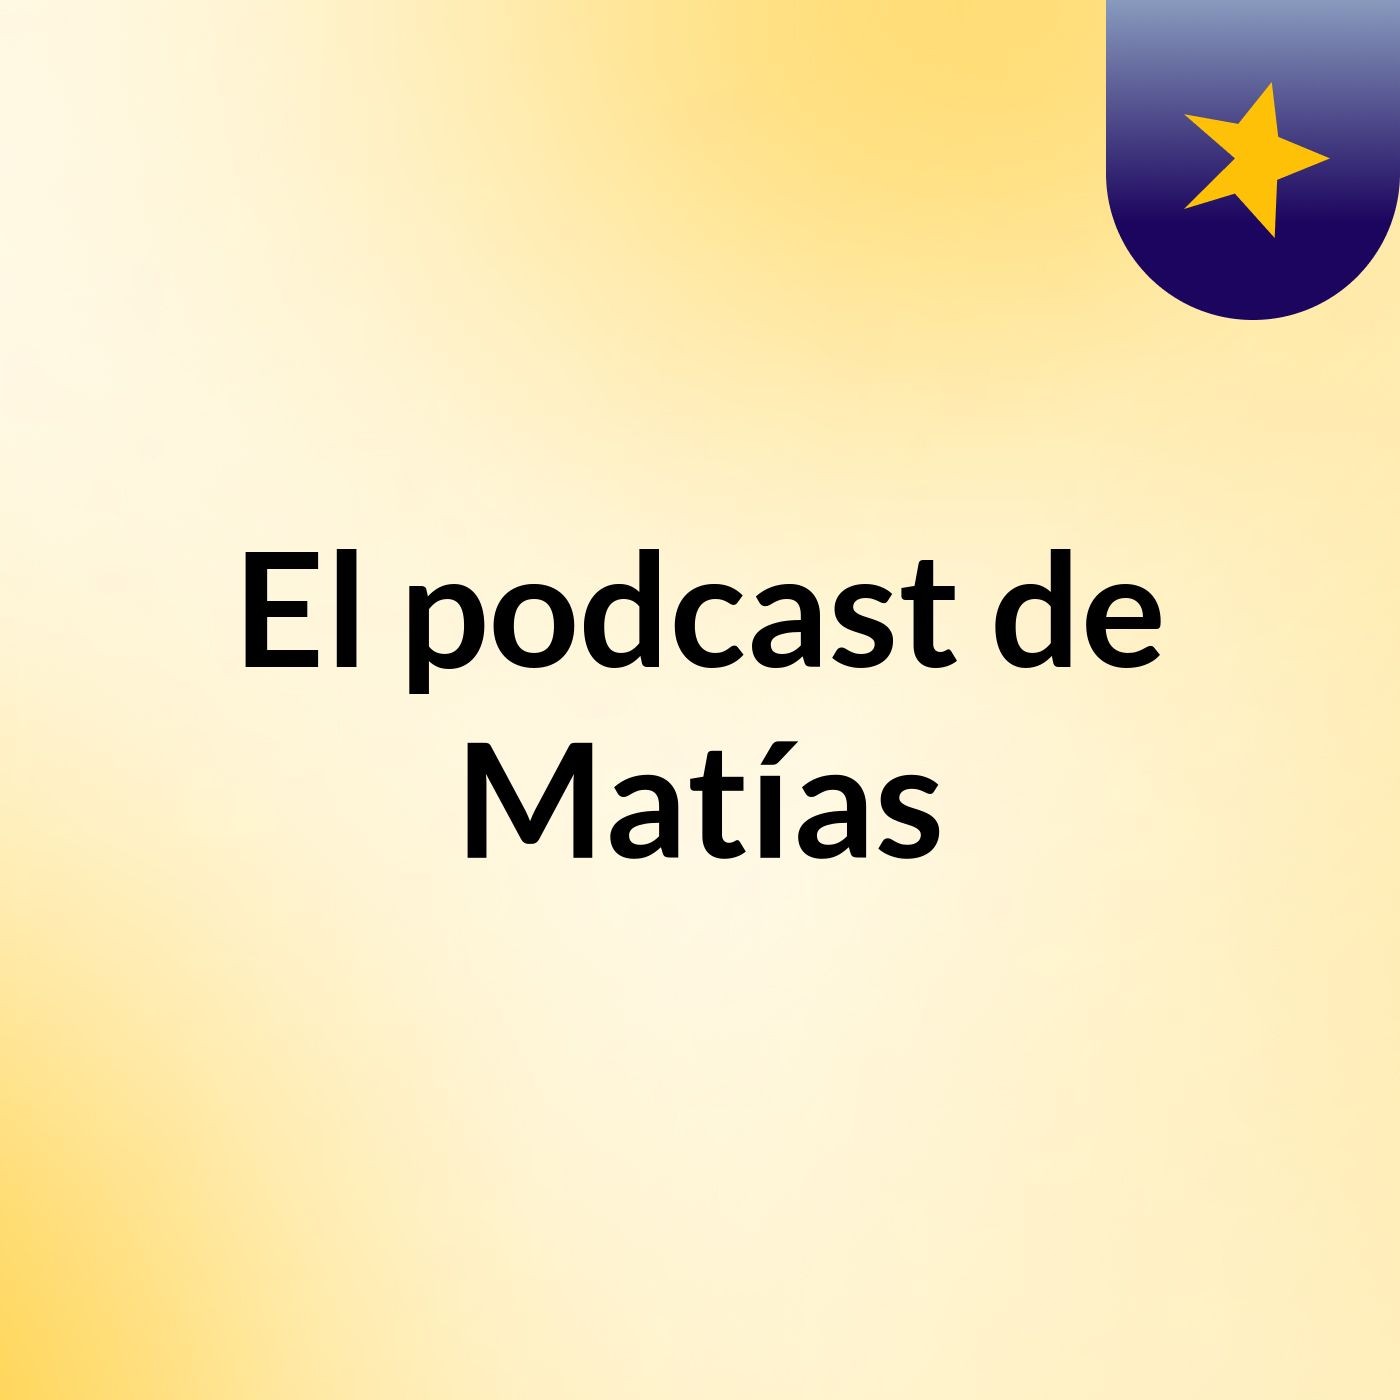 El podcast de Matías